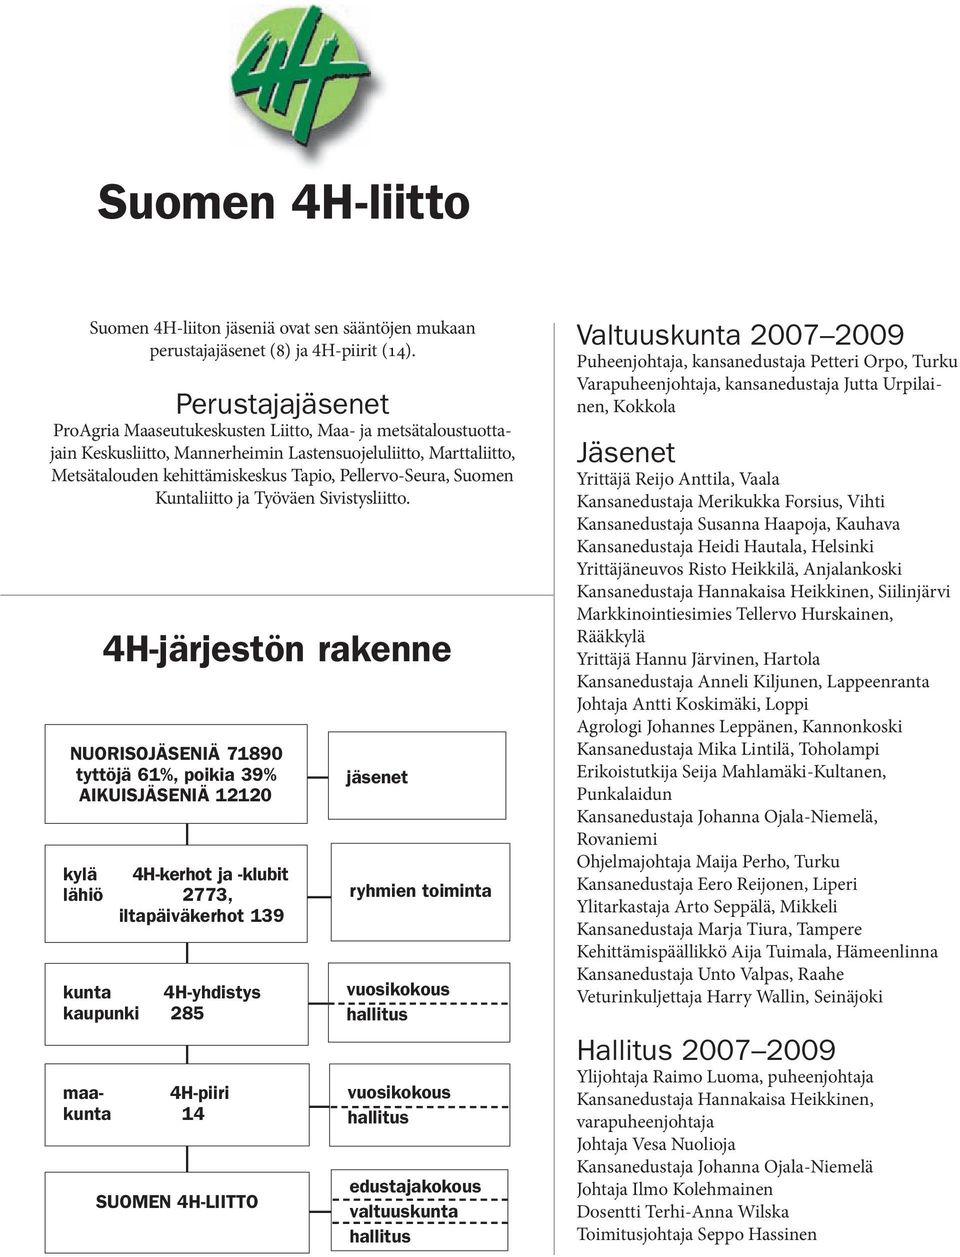 Suomen Kuntaliitto ja Työväen Sivistysliitto.